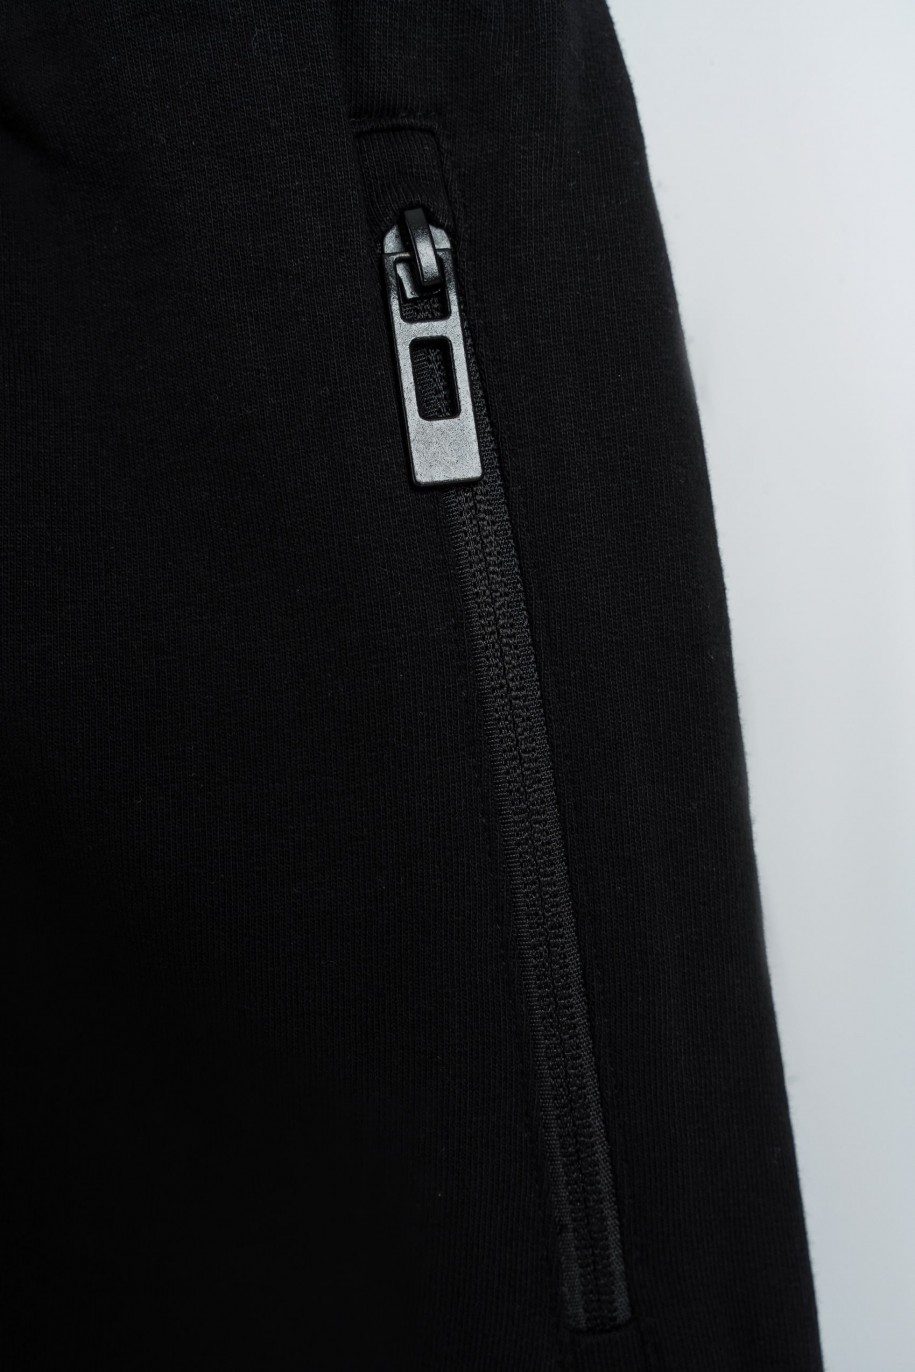 Czarne spodnie dresowe z minimalistycznym nadrukiem z boku - 47590